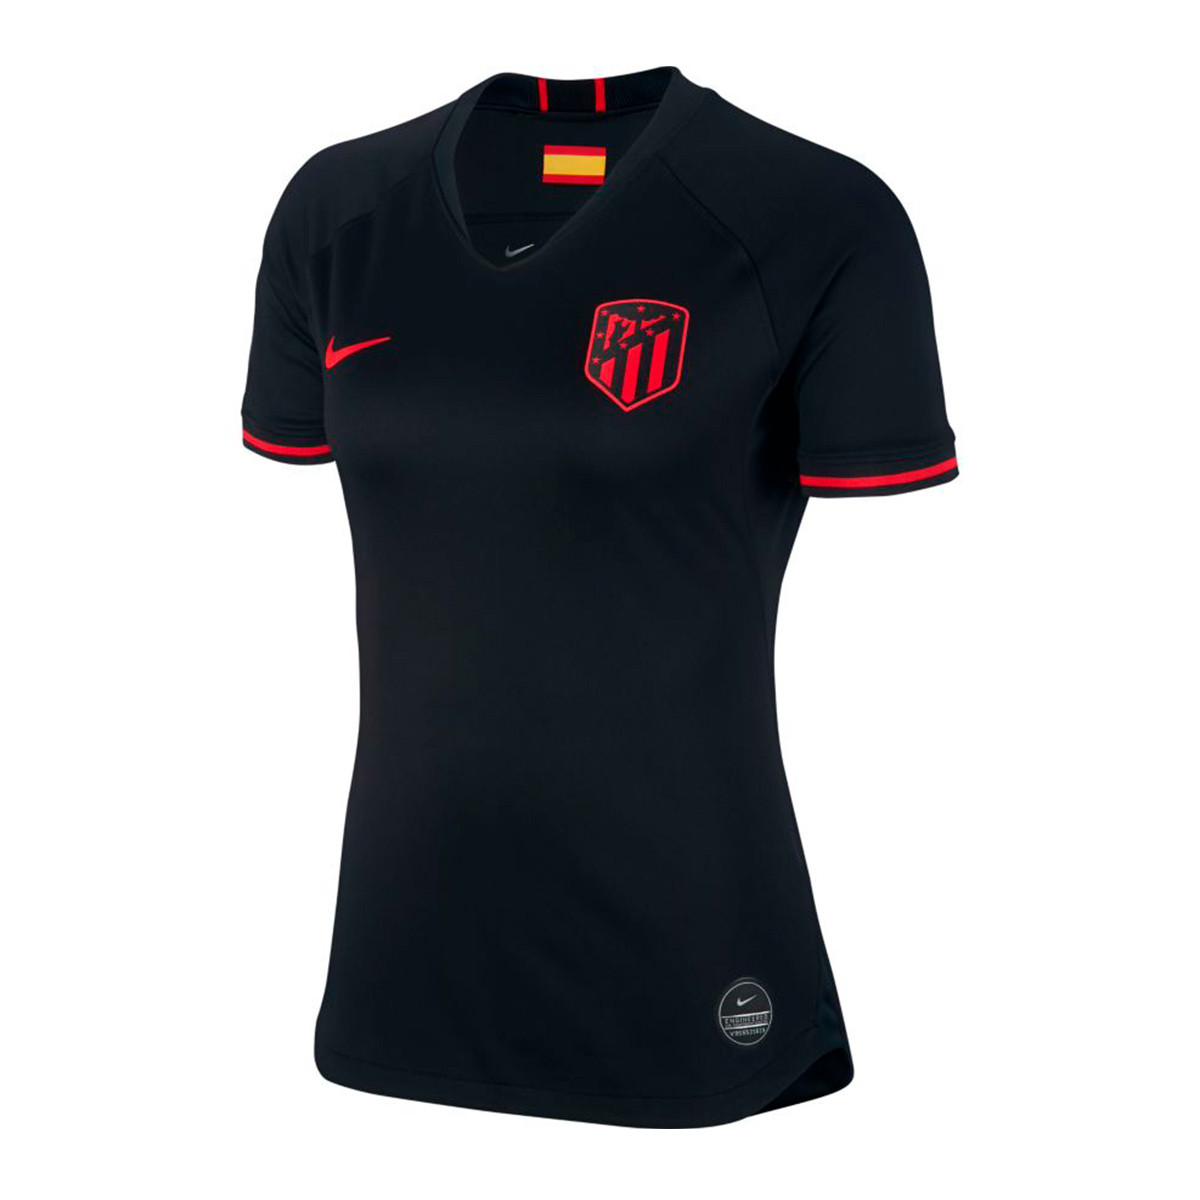 Camiseta Nike Atletico de Madrid Breathe Stadium Segunda Equipación  2019-2020 Mujer Black-Challenge red - Tienda de fútbol Fútbol Emotion